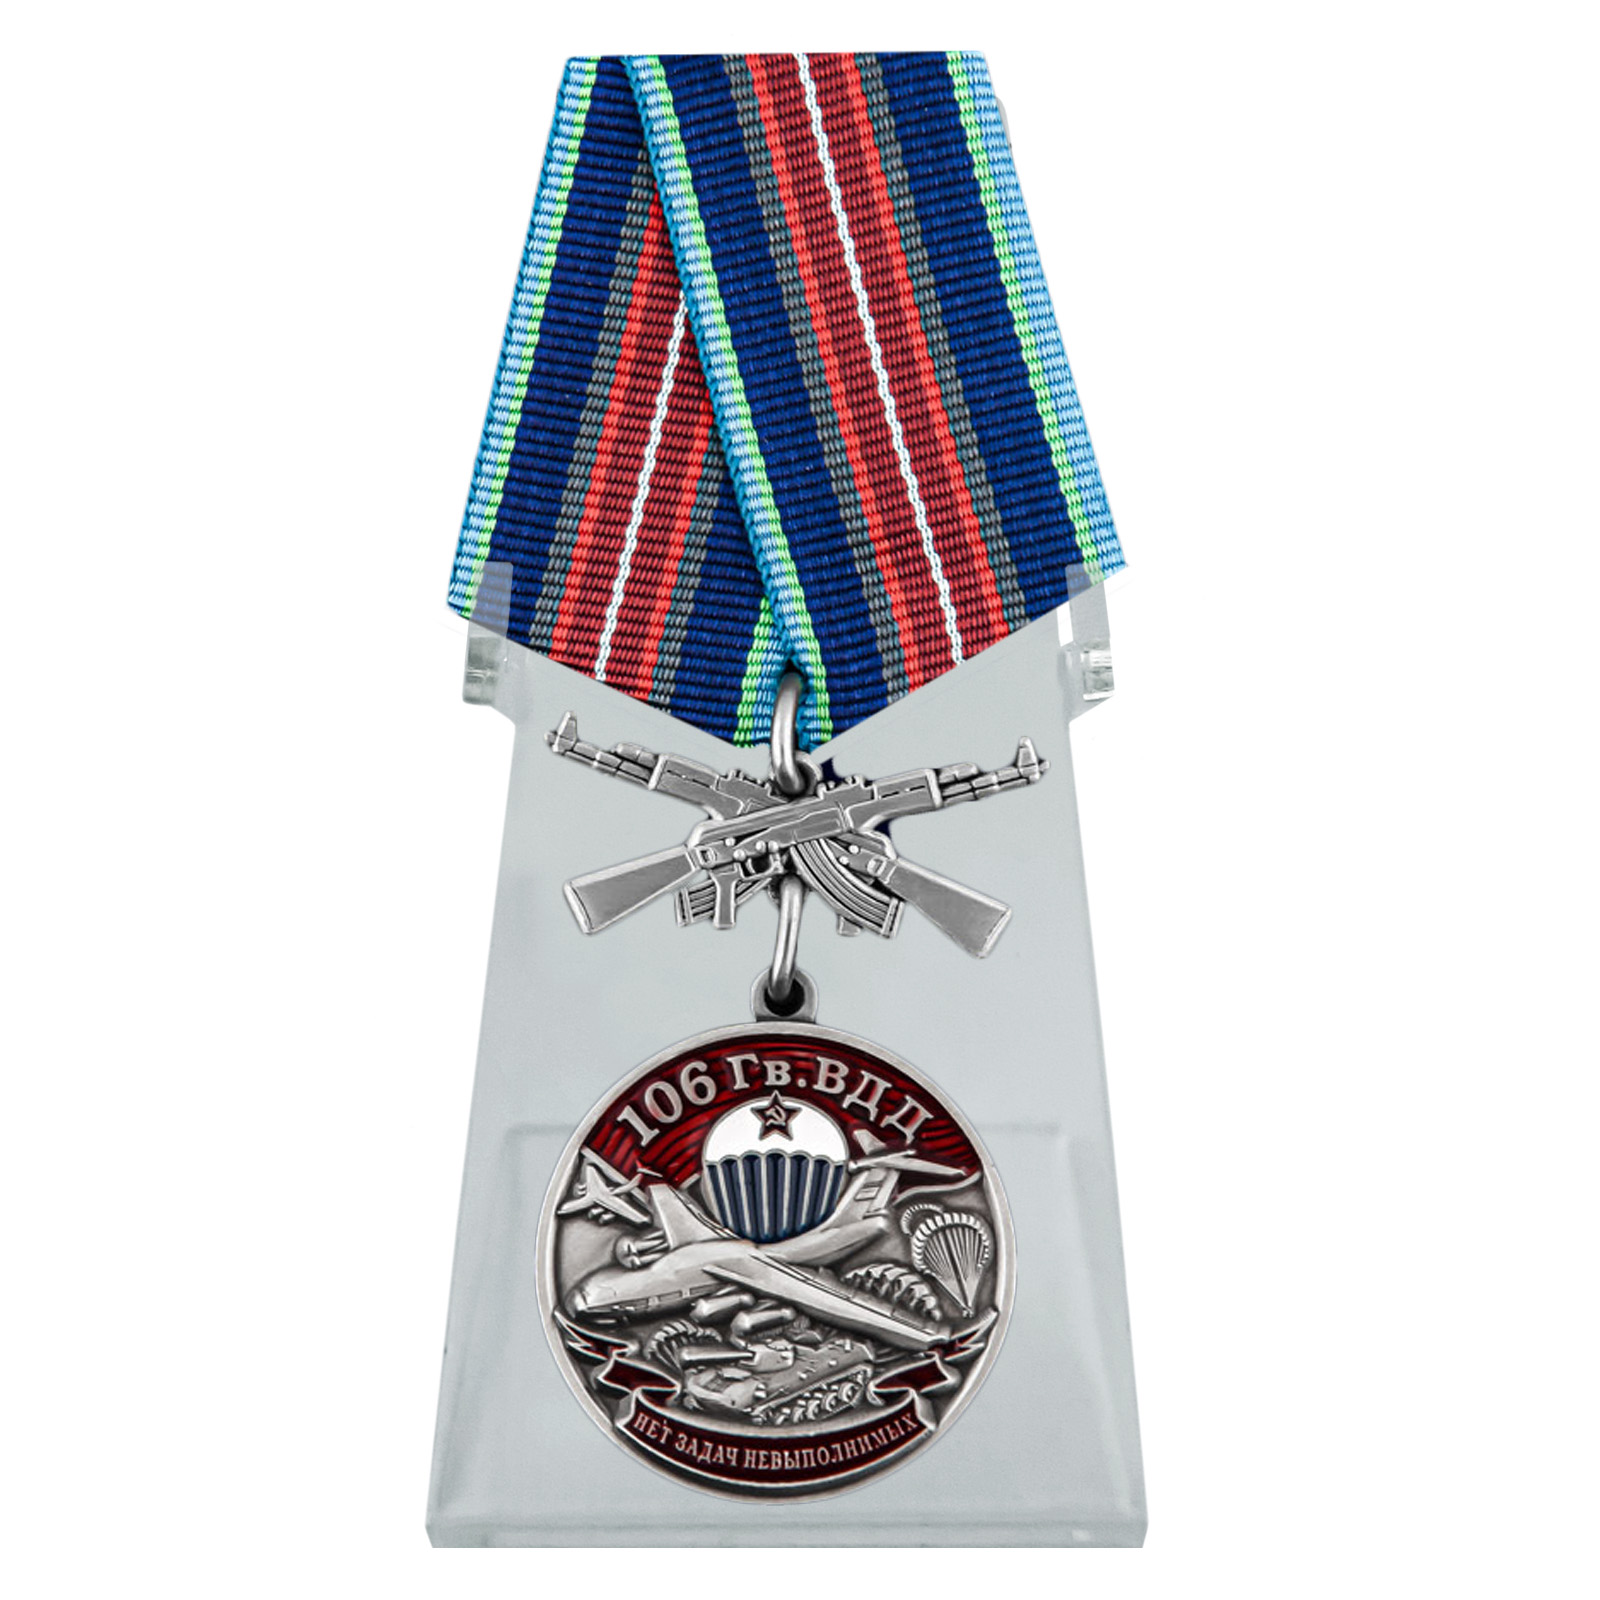 Медаль "106 Гв. ВДД" на подставке